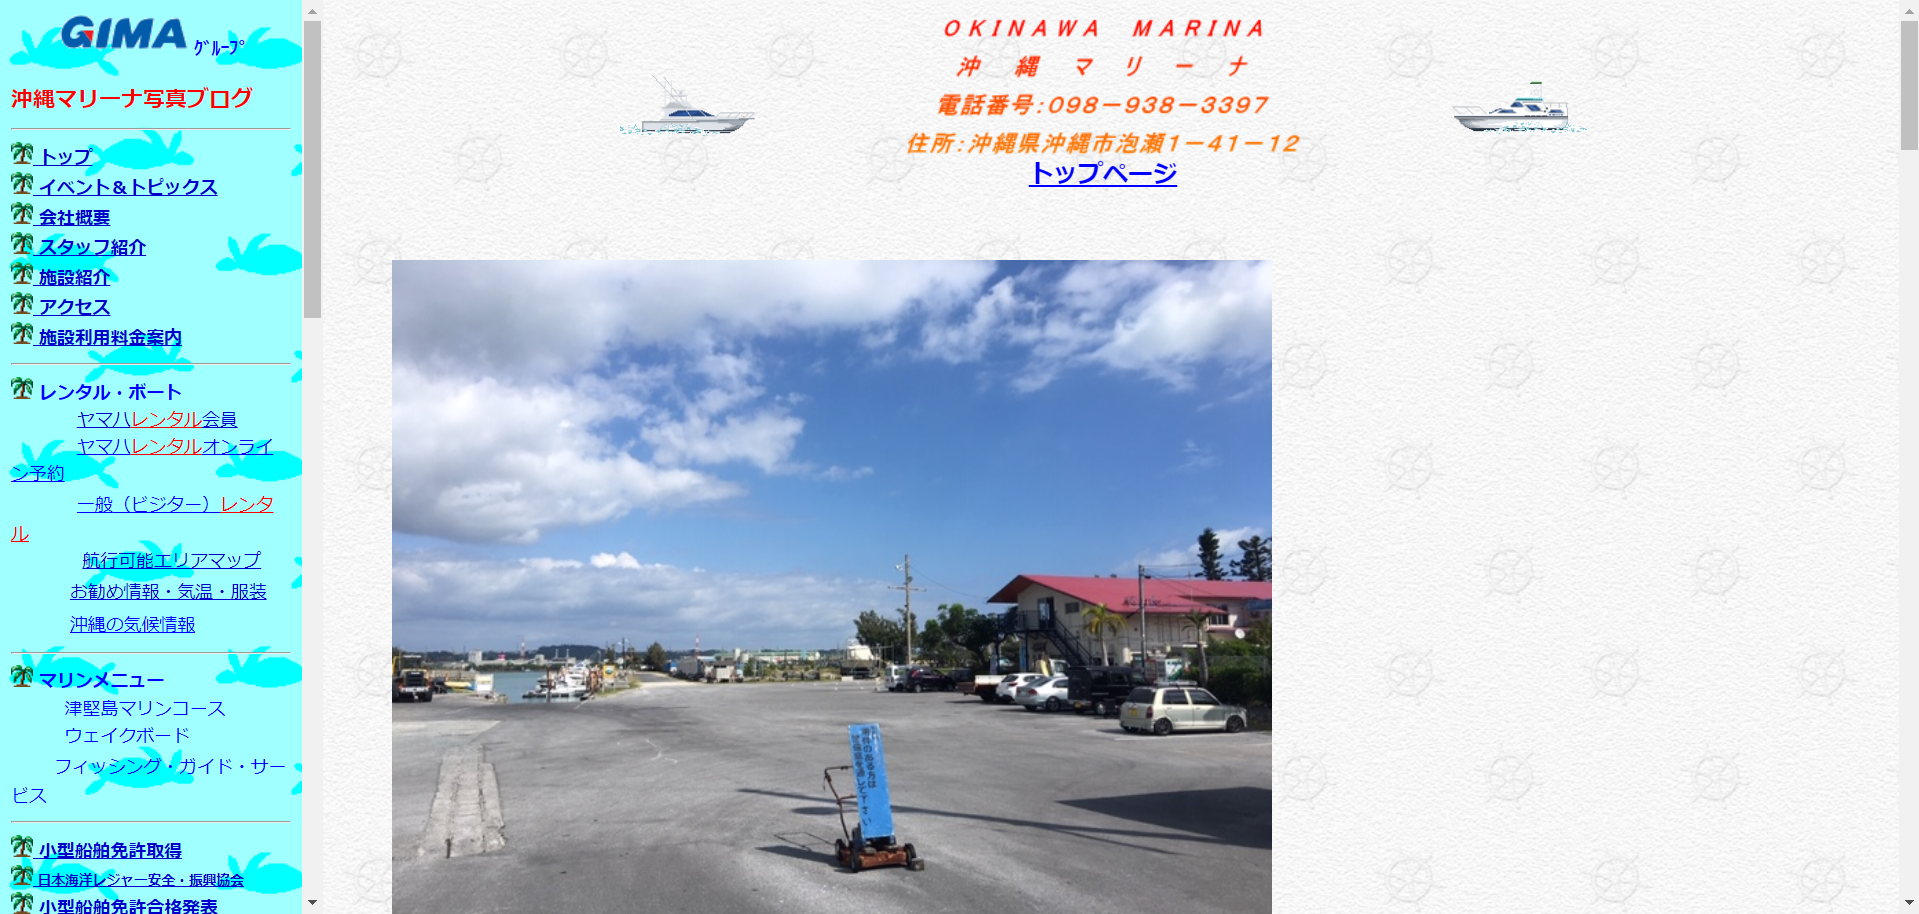 沖縄県 マリンショップ宝島で小型船舶免許を取得